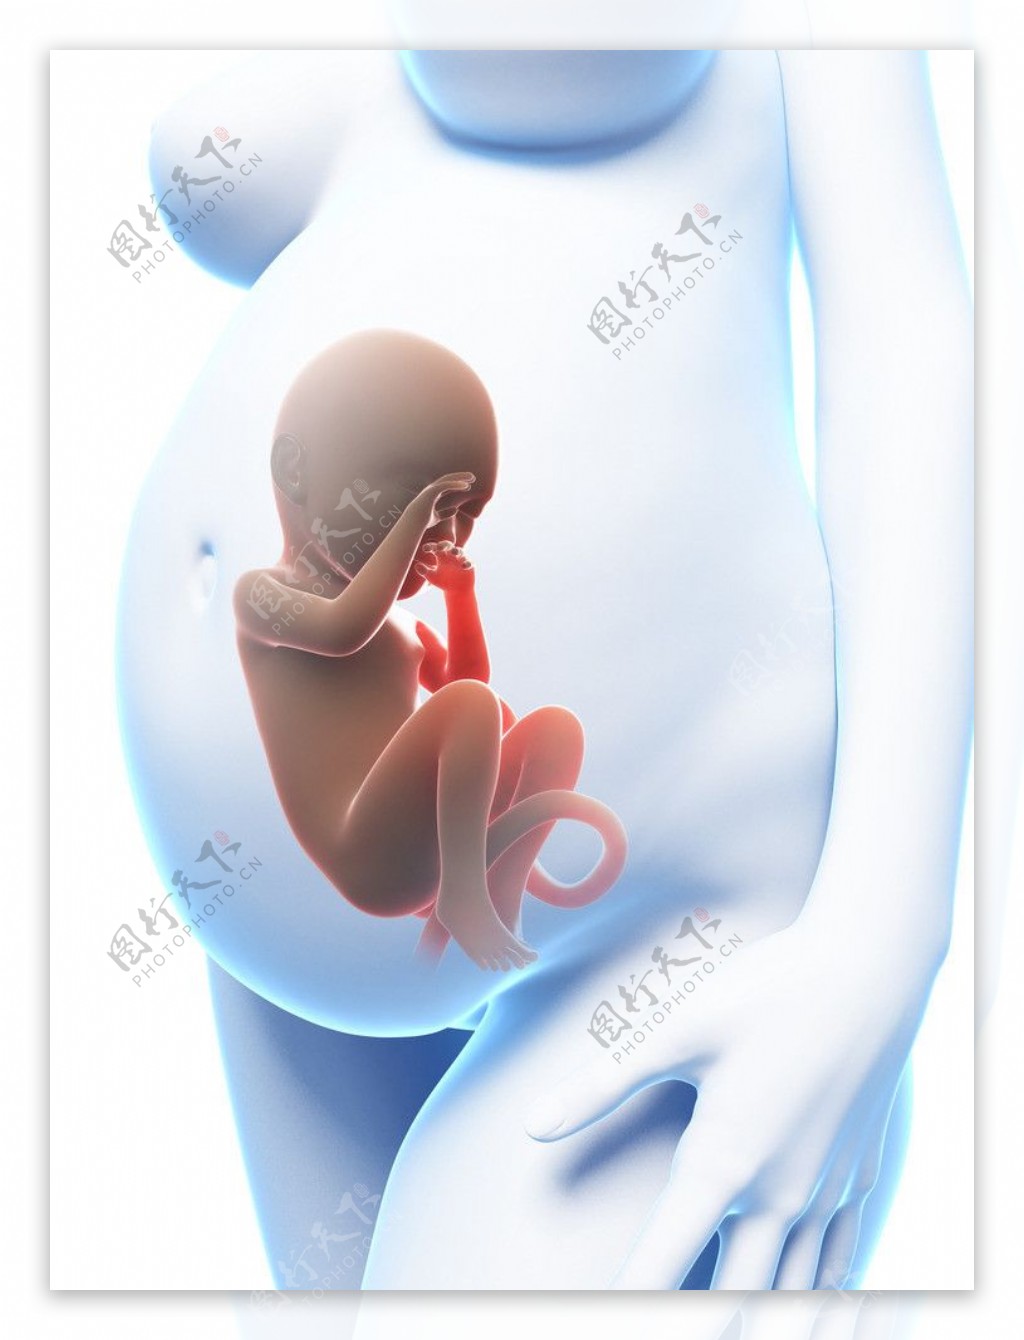 怀孕医学图片